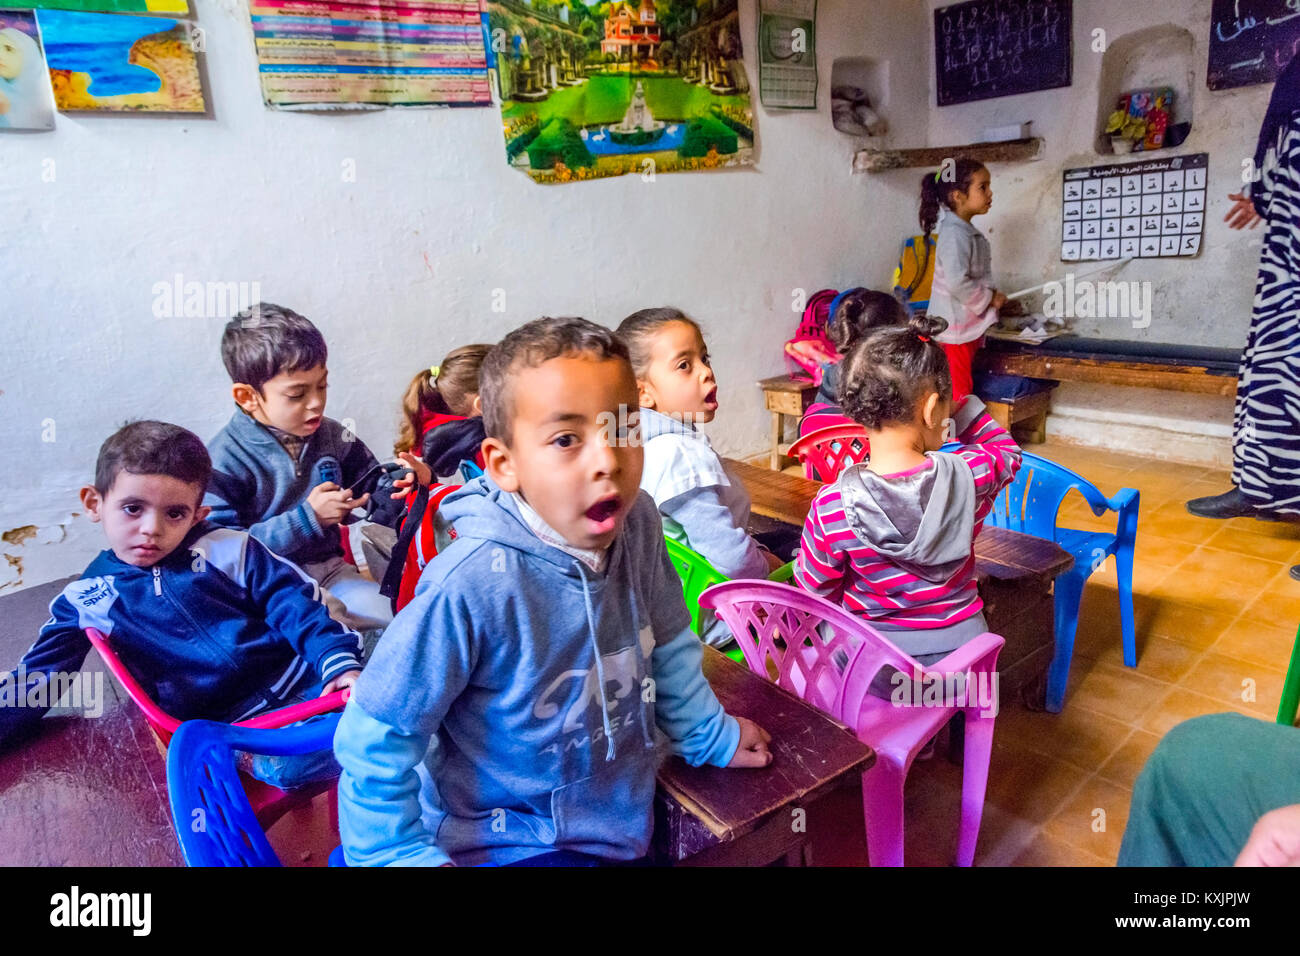 Fes, MAROC - 10 DÉCEMBRE : School girl debout devant la classe et en pointant sur l'alphabet en lettres arabes de l'école locale de Fès. Décembre 2016 Banque D'Images